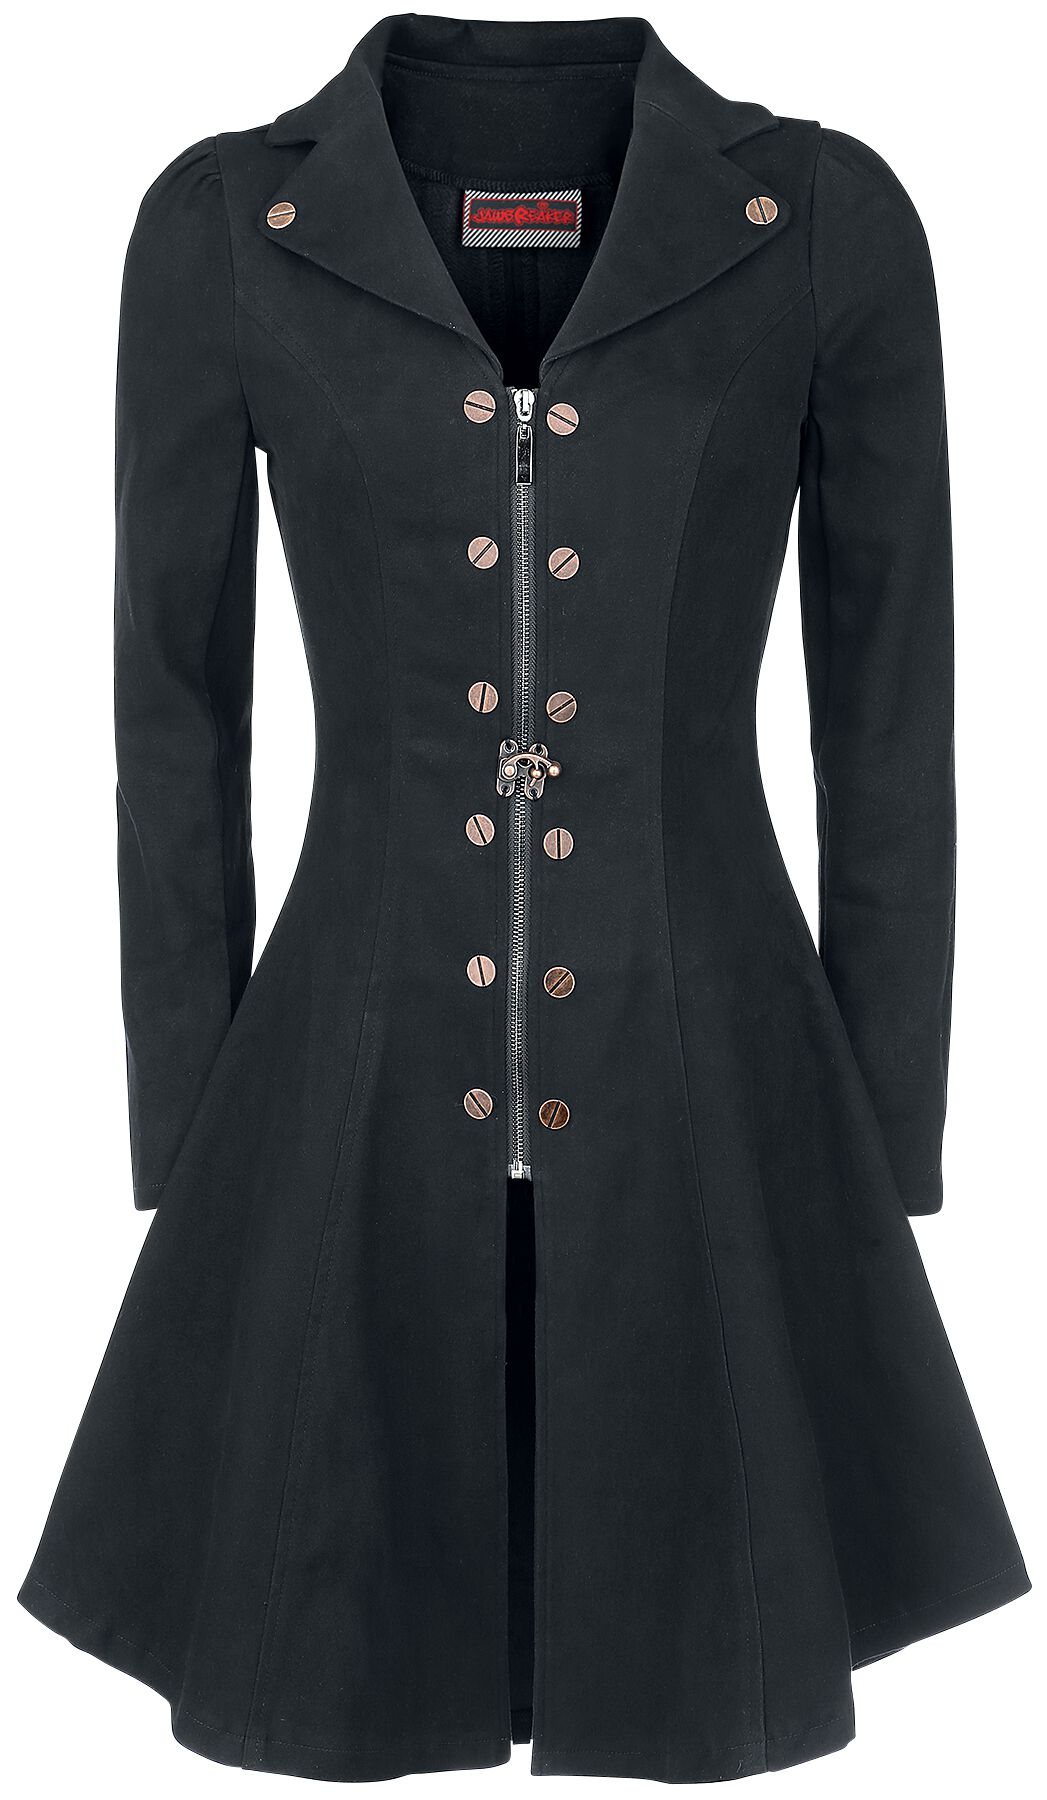 Manteau court Gothic de Jawbreaker - Manteau Lovely - S à M - pour Femme - noir